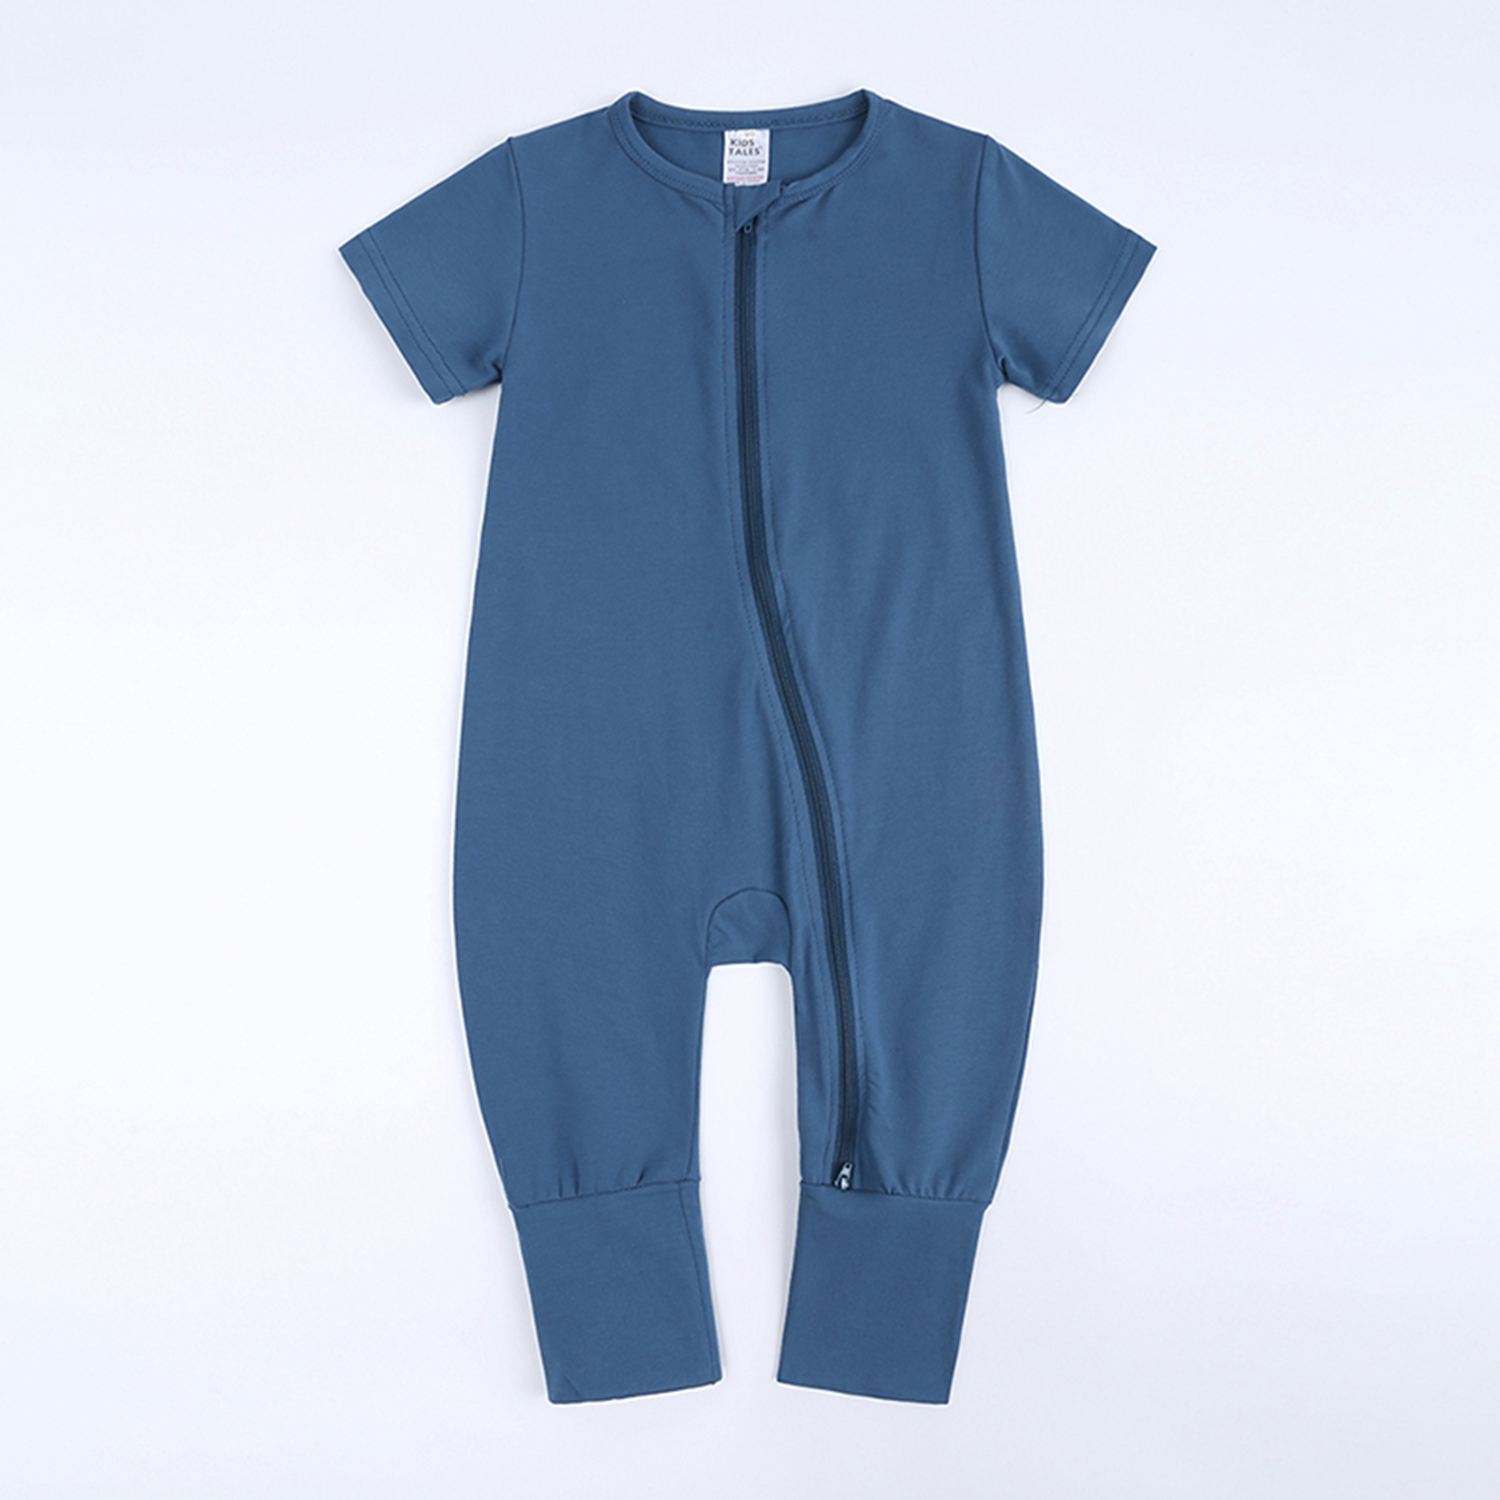 BEST BABY ROMPER BLUE 3-6 Mo Cotton Double Zipper Infant Bodysuit Sleeper Boy